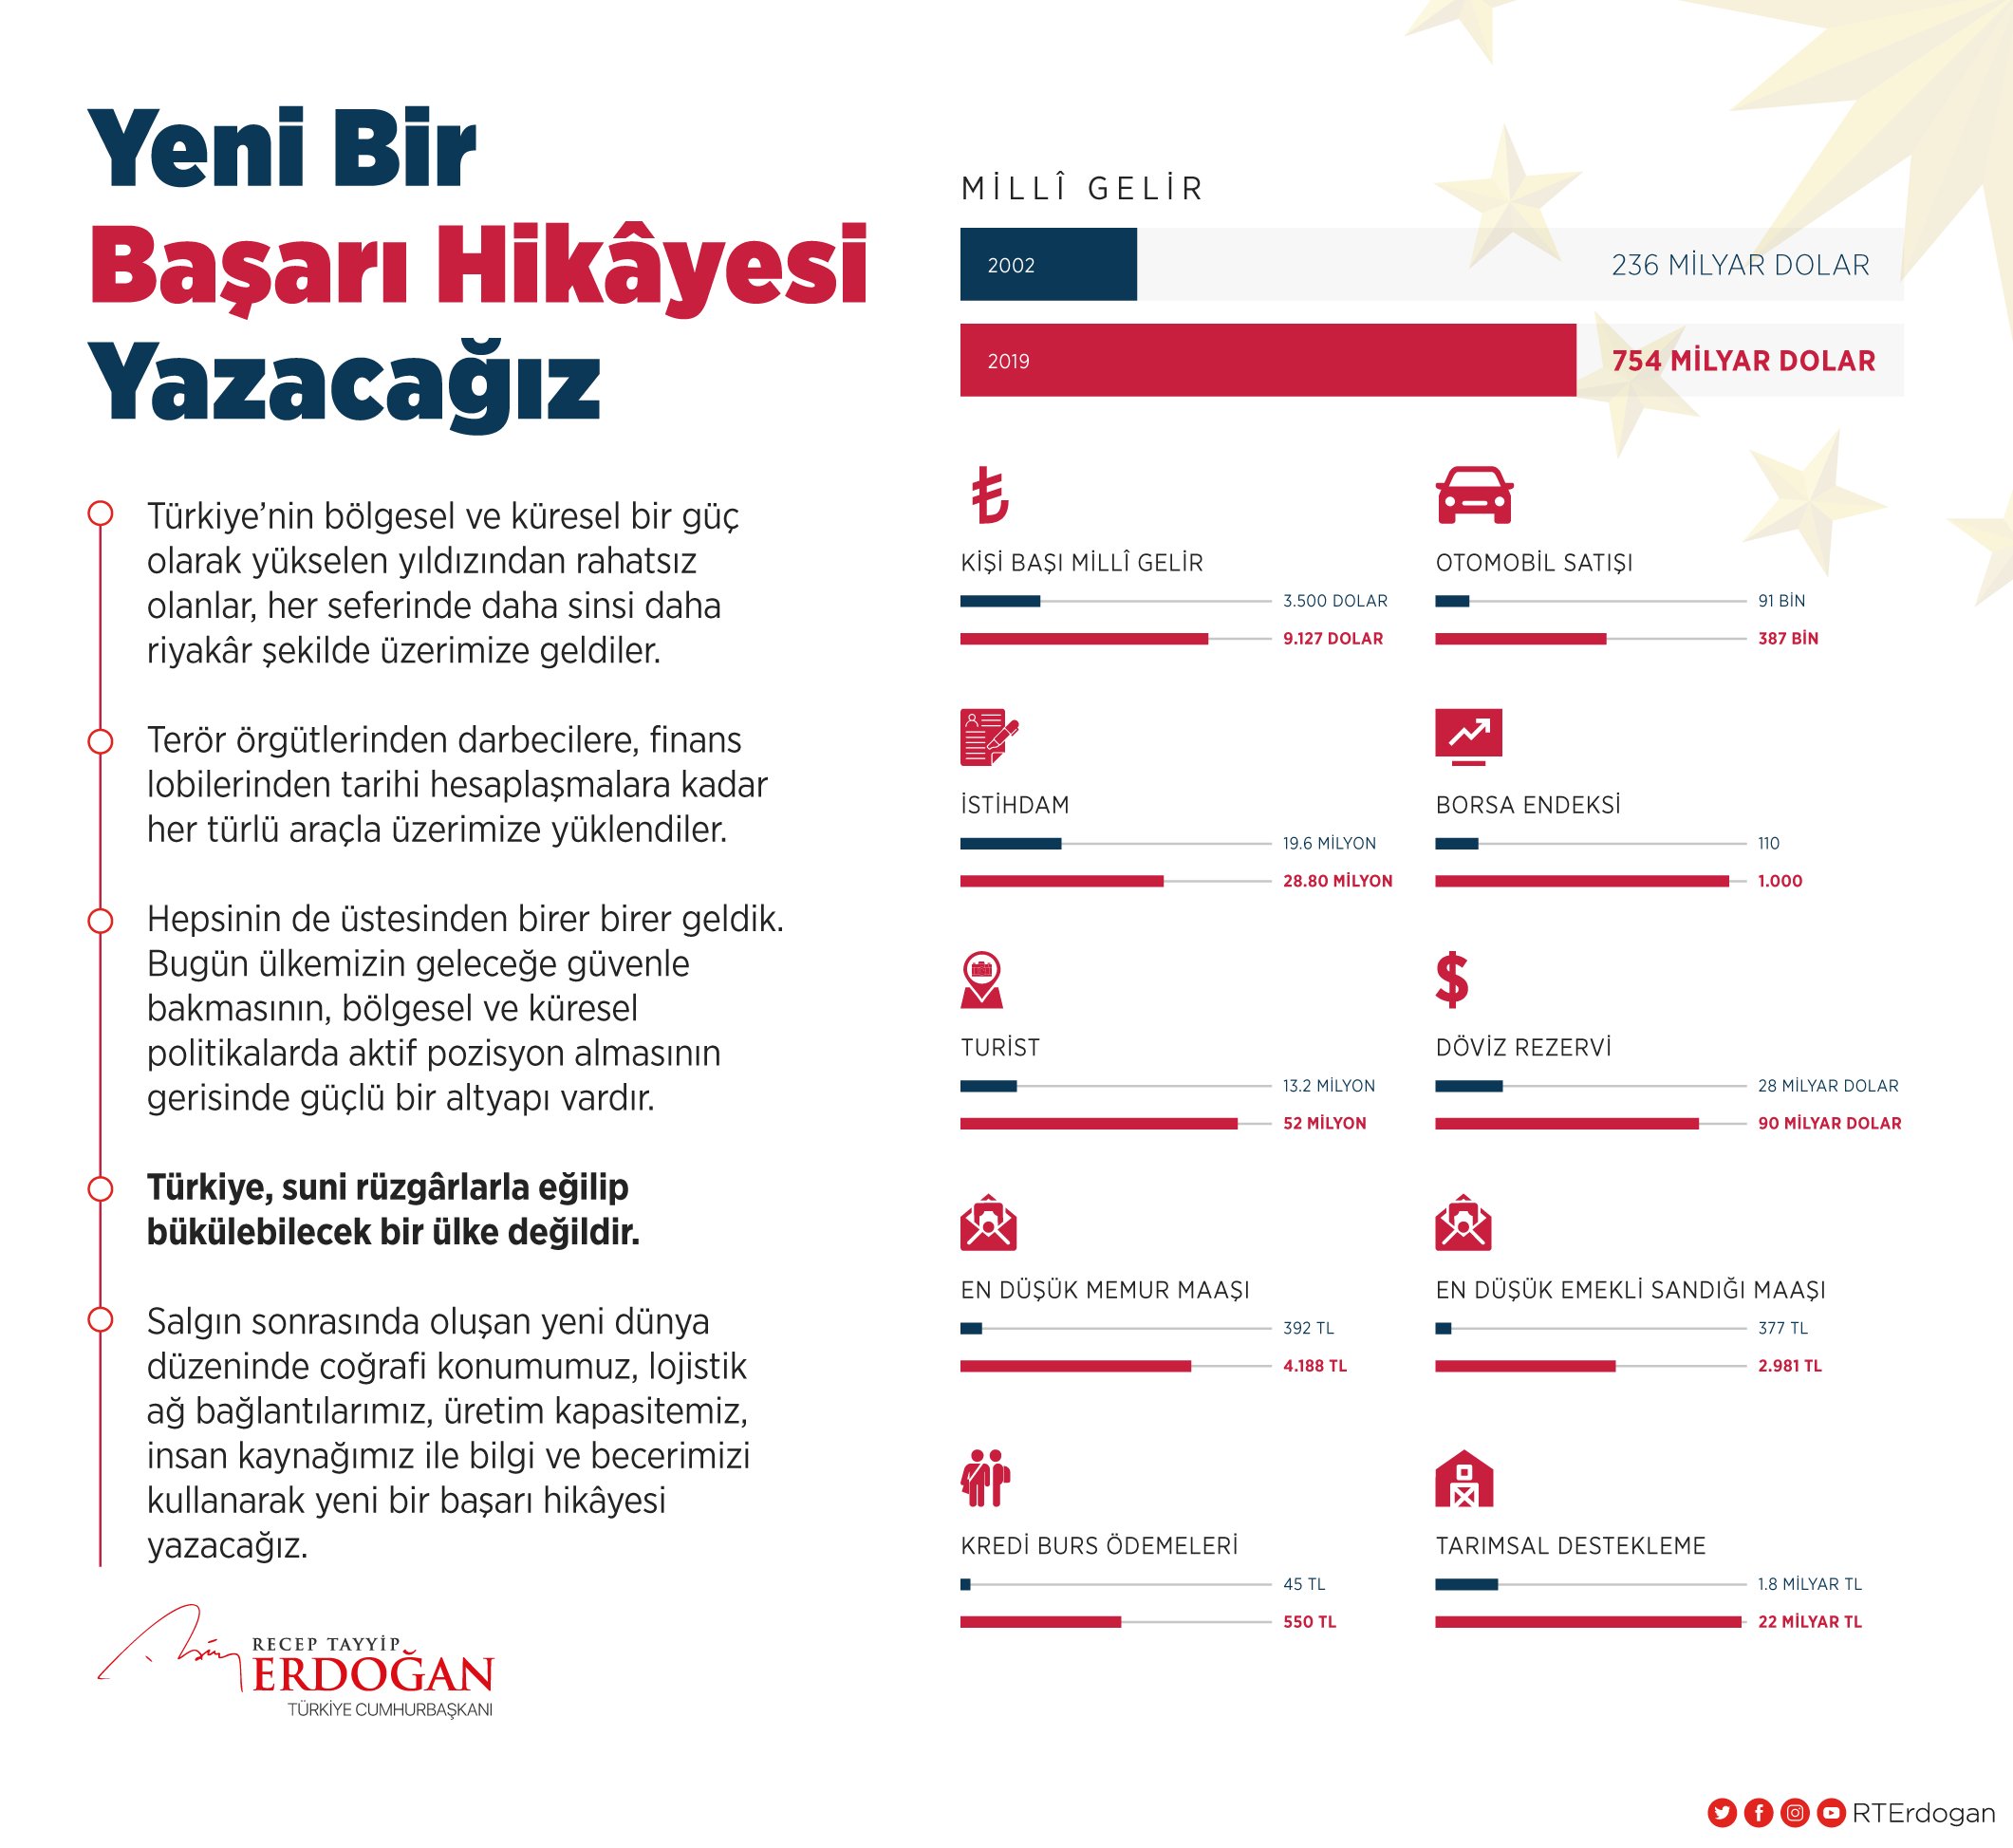 Erdoğan: Yeni bir başarı hikayesi yazacağız #2